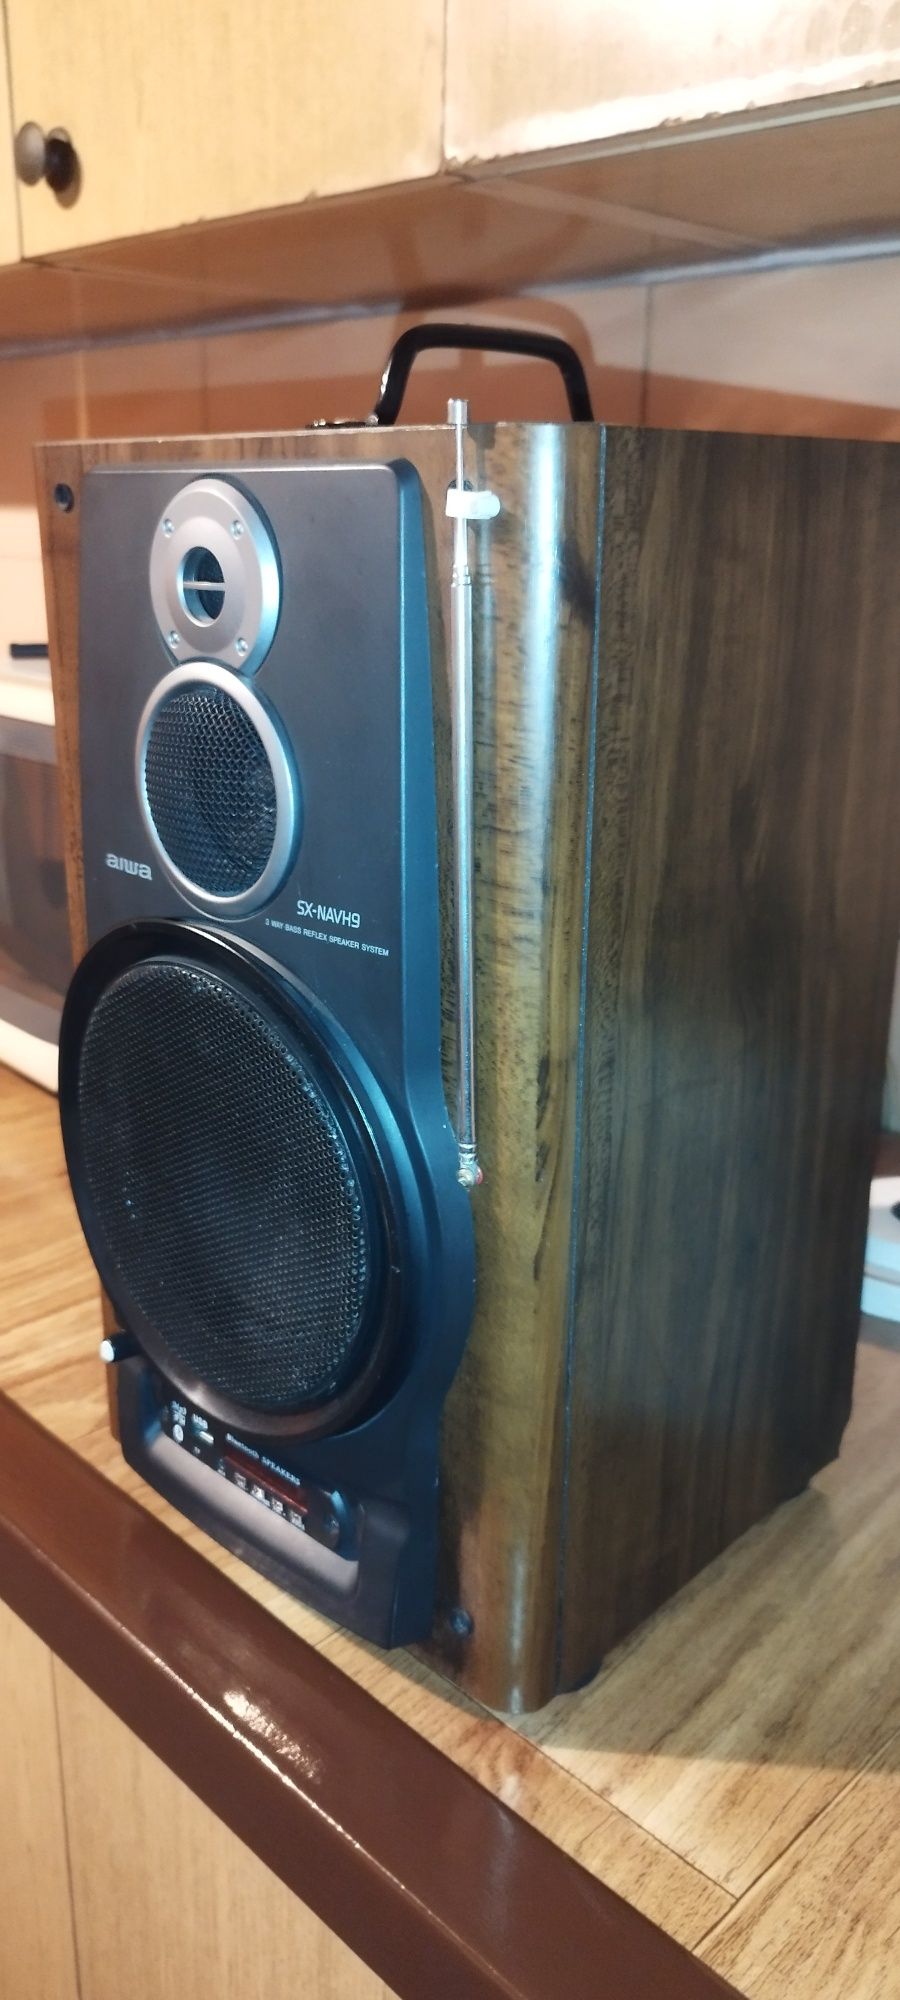 Głośnik Aiwa przerobiony na przenośny bezprzewodowy bluetooth